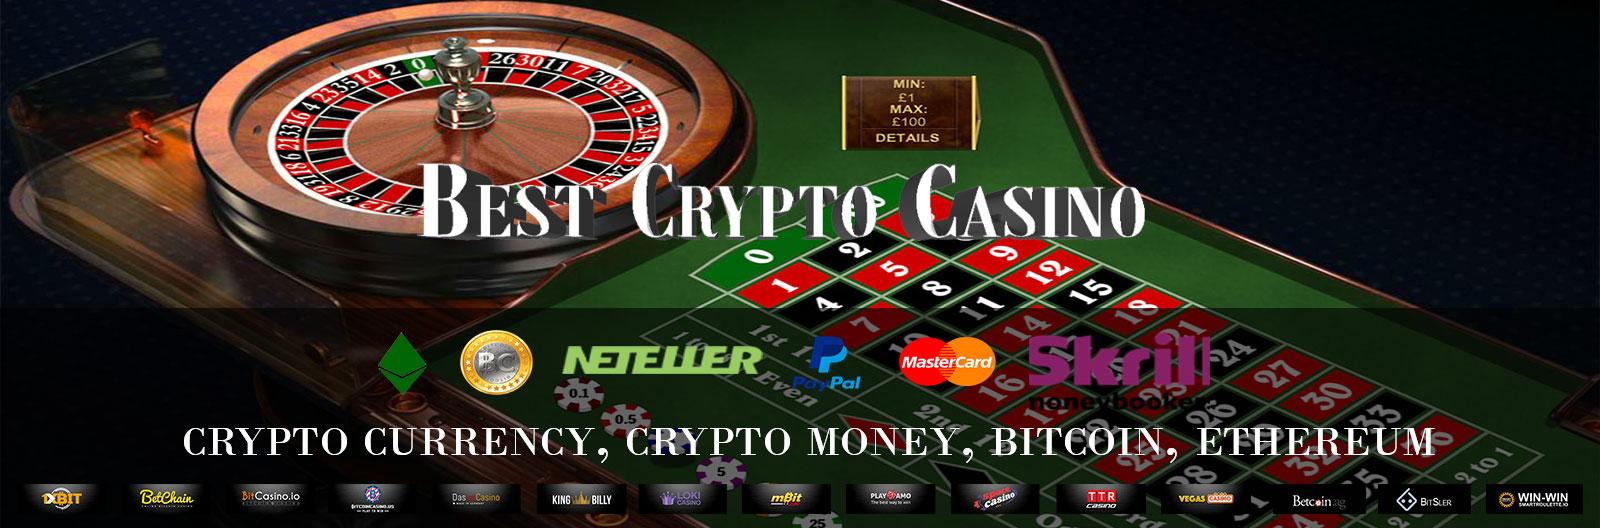 Bitcoin roulette wheel online bitcoin casino